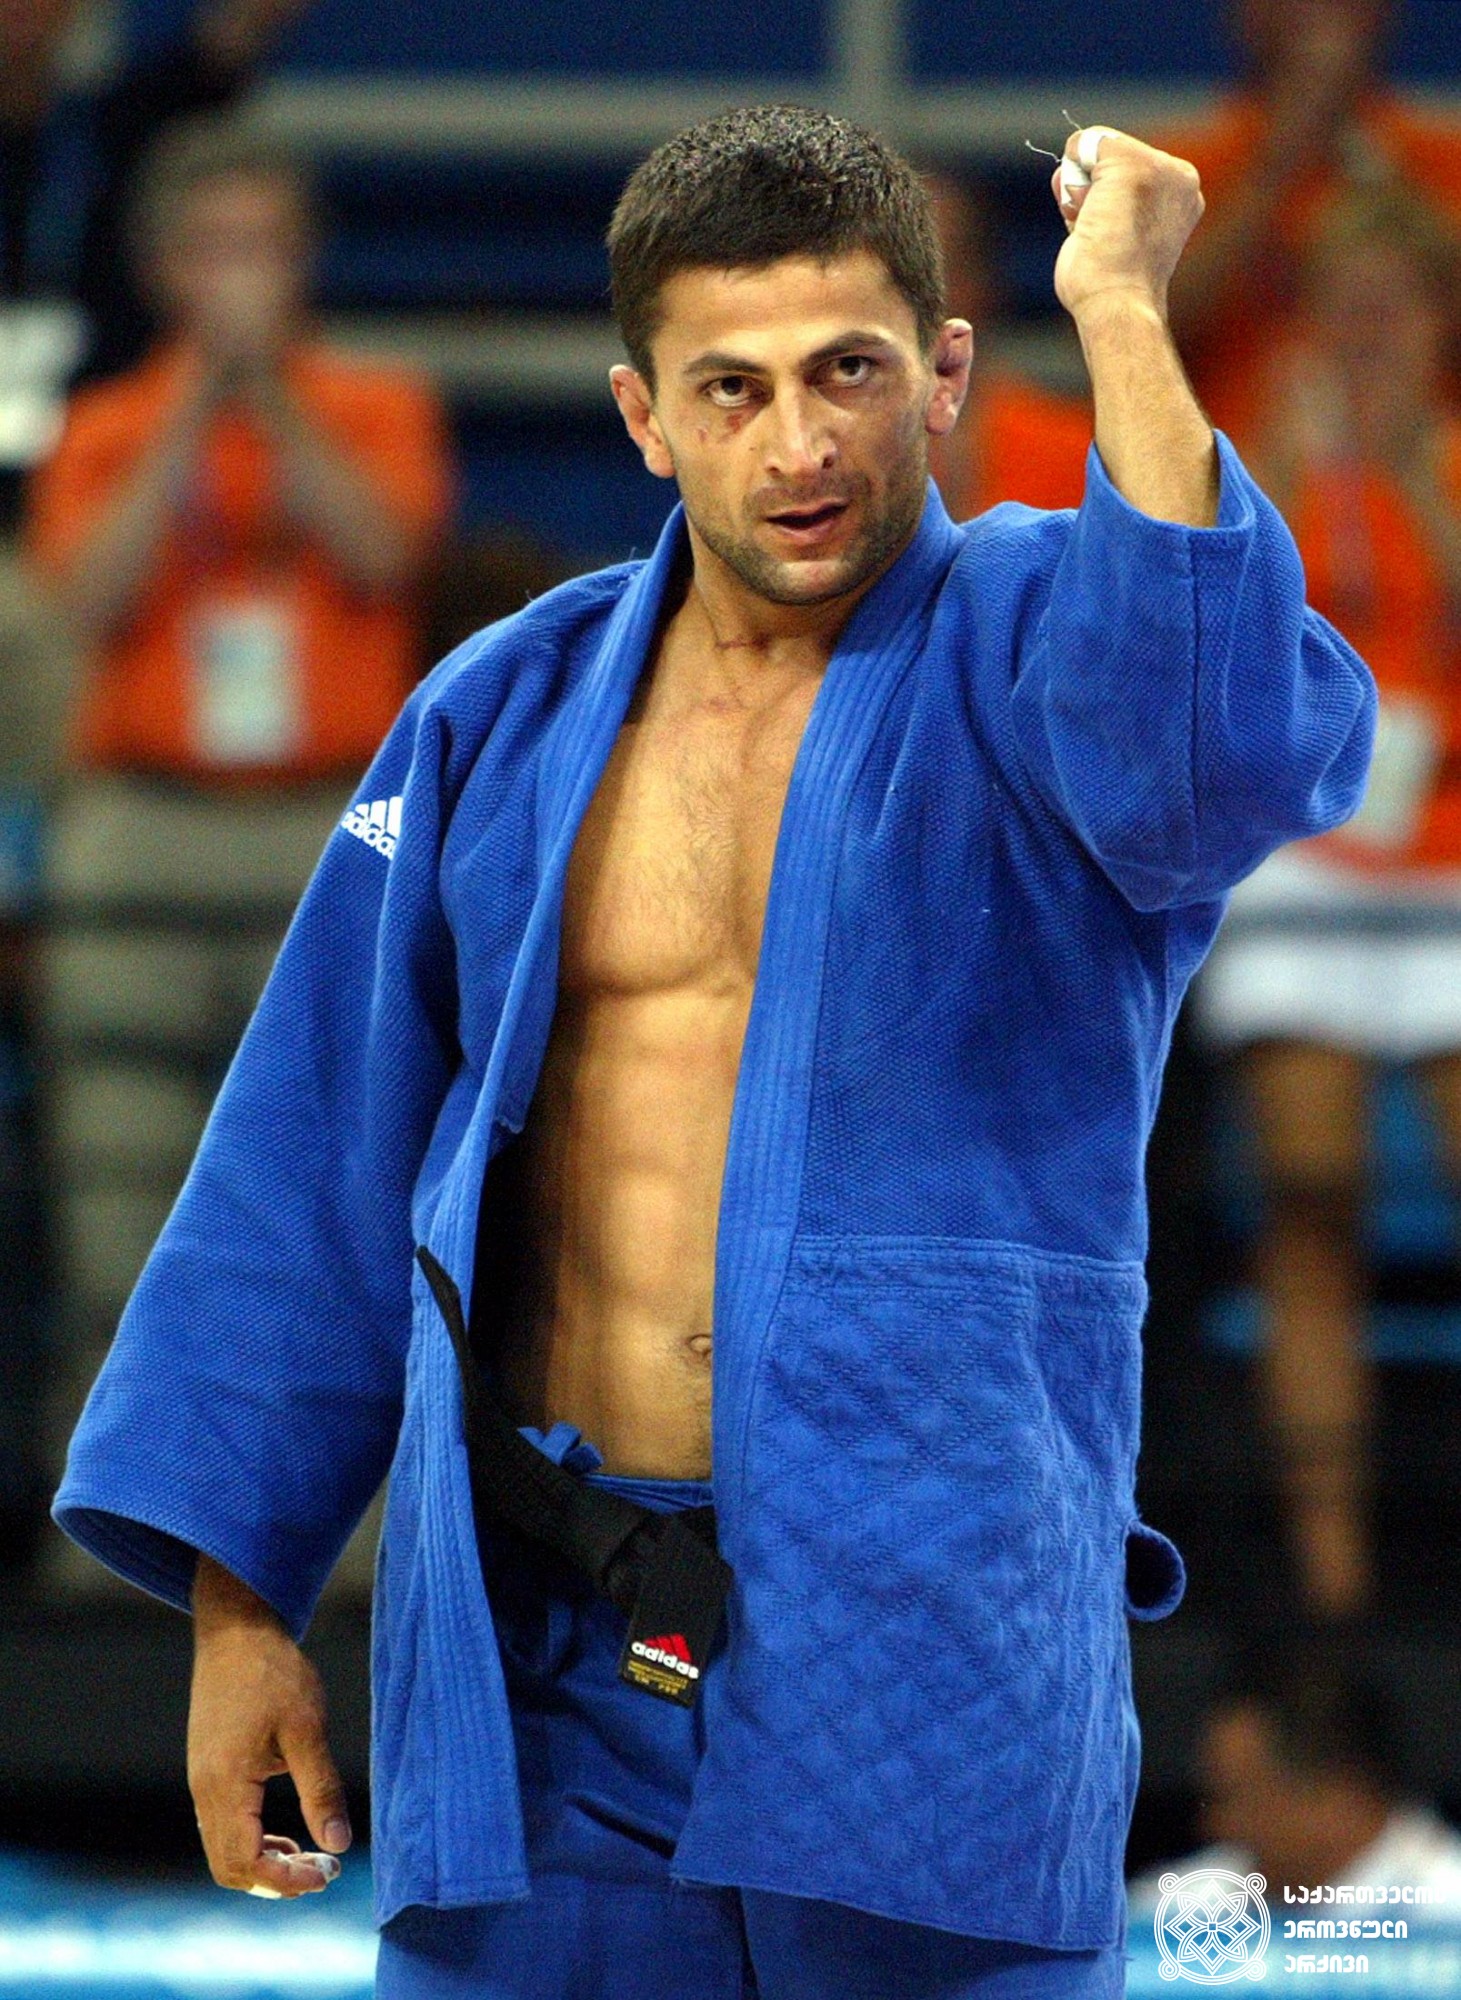 ზურაბ ზვიადაური. <br>
XXVIII ოლიმპიური თამაშების ჩემპიონი ძიუდოში (2004 წელი, ათენი). <br> 
Zurab Zviadauri. <br>
Champion of the XXVIII Olympic Games in Judo (2004, Athens).